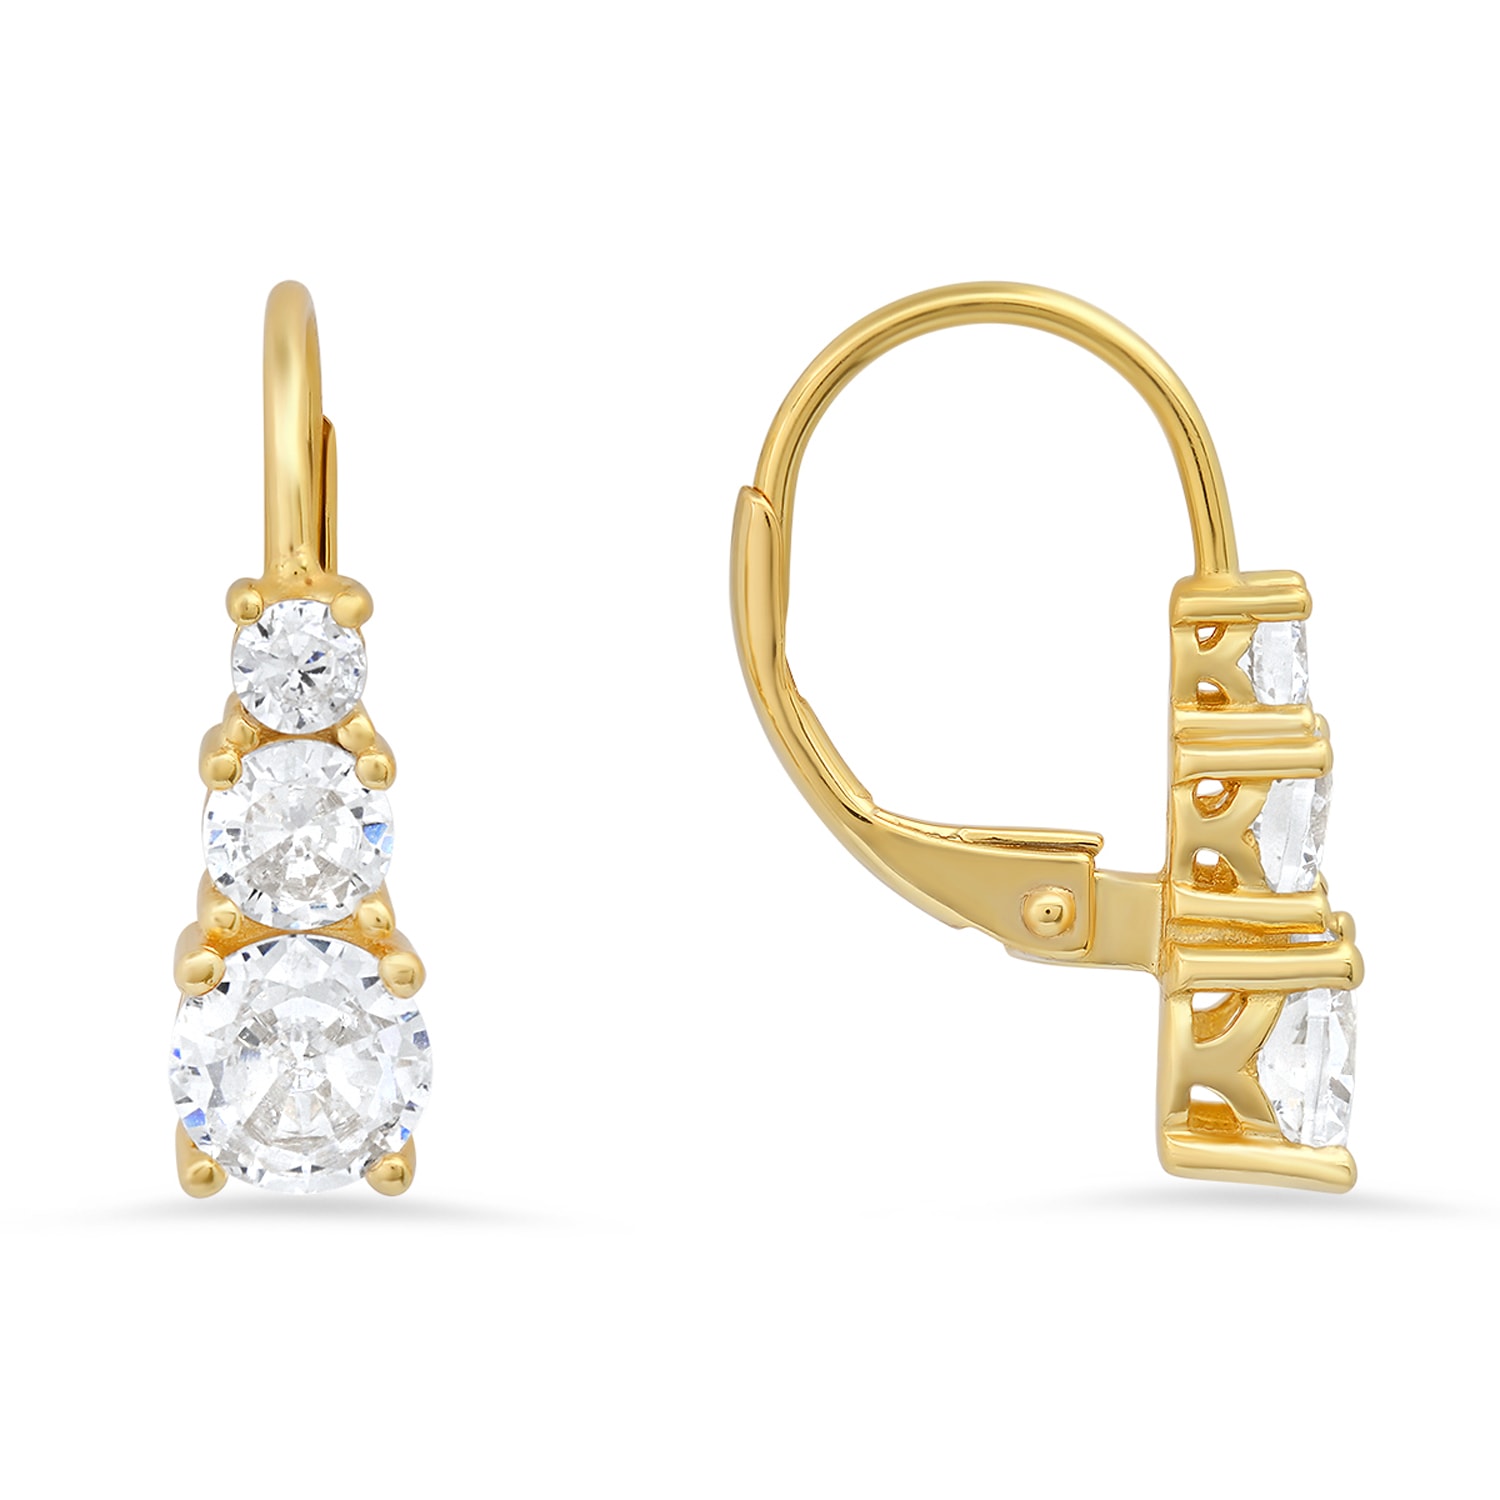 Kylie Harper Women's Gold Three Stone Diamond Cz Leverback Earrings